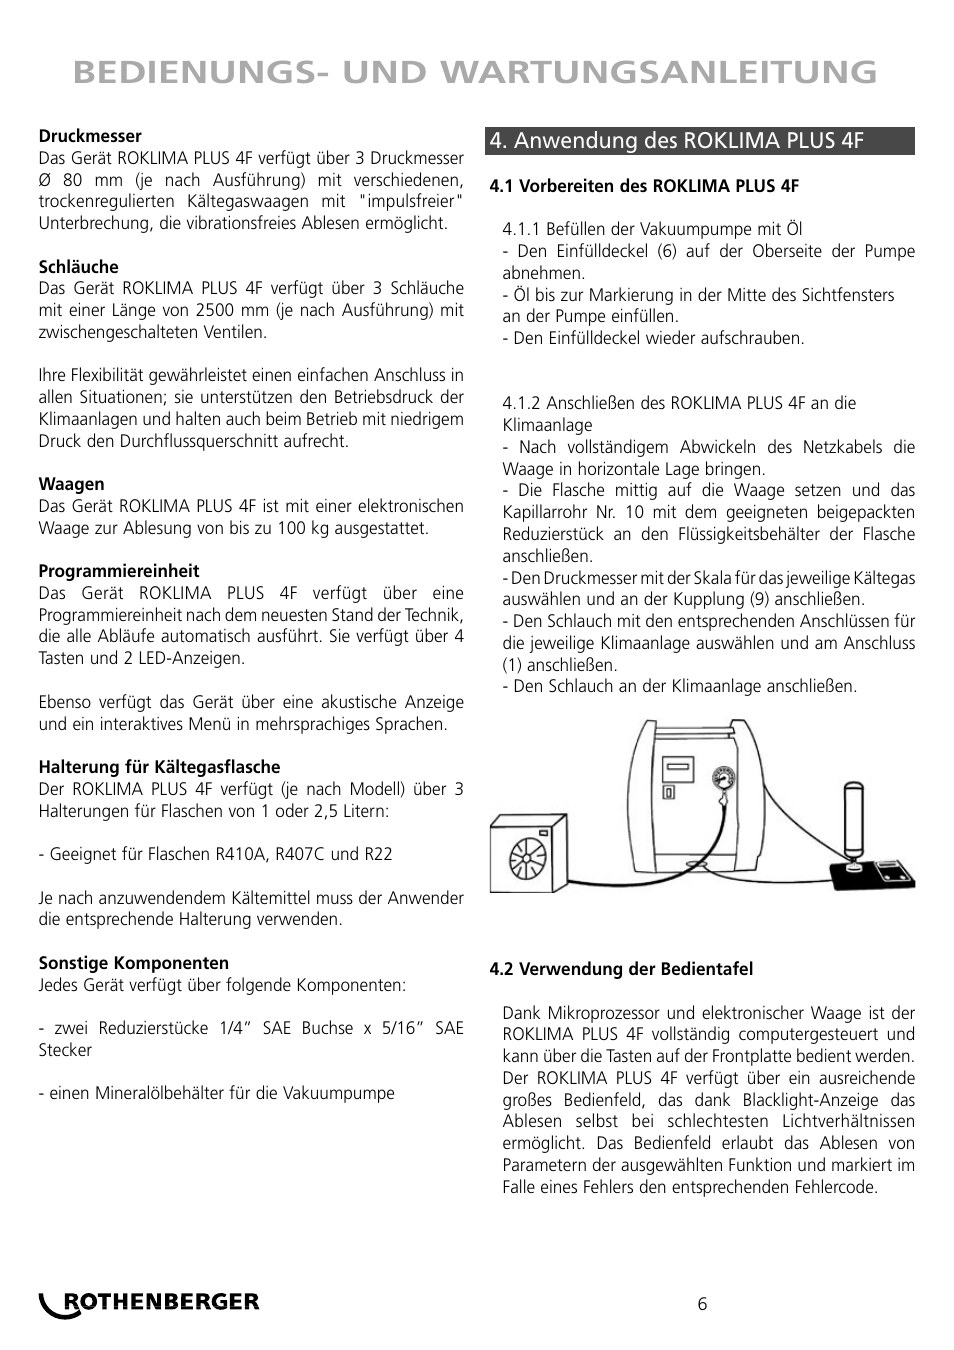 Bedienungs- und wartungsanleitung | ROTHENBERGER ROKLIMA MULTI 4F User  Manual | Page 6 / 80